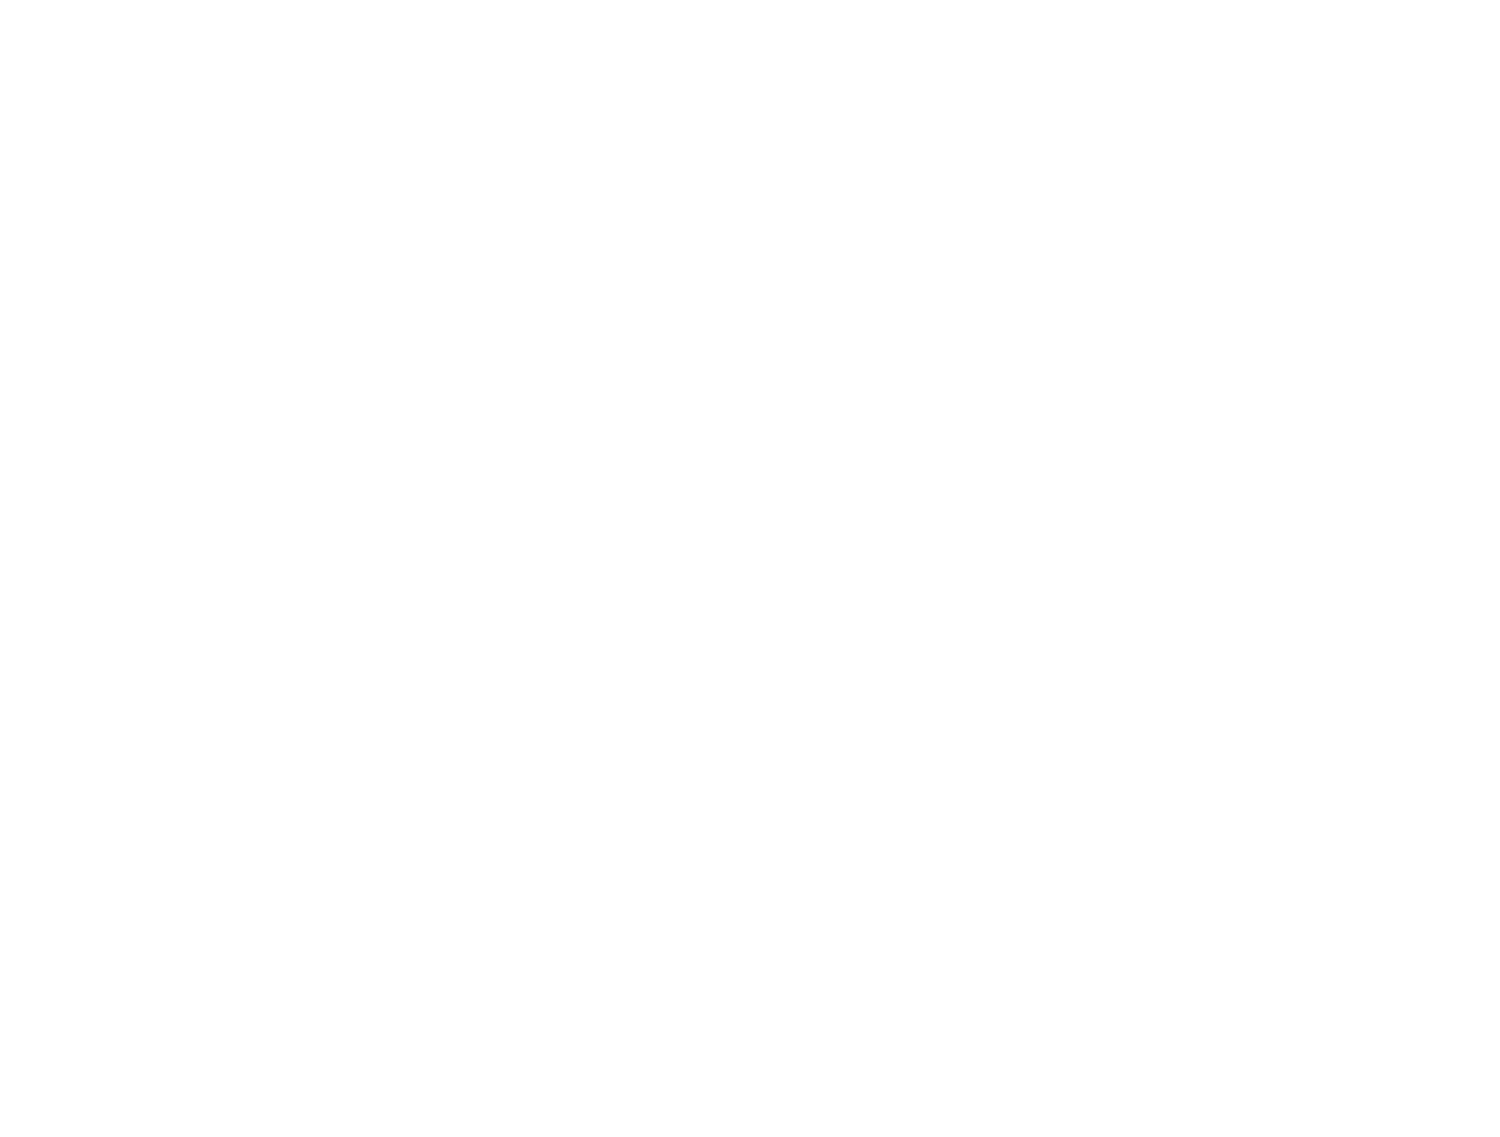 Bethel Woods Condominium Association